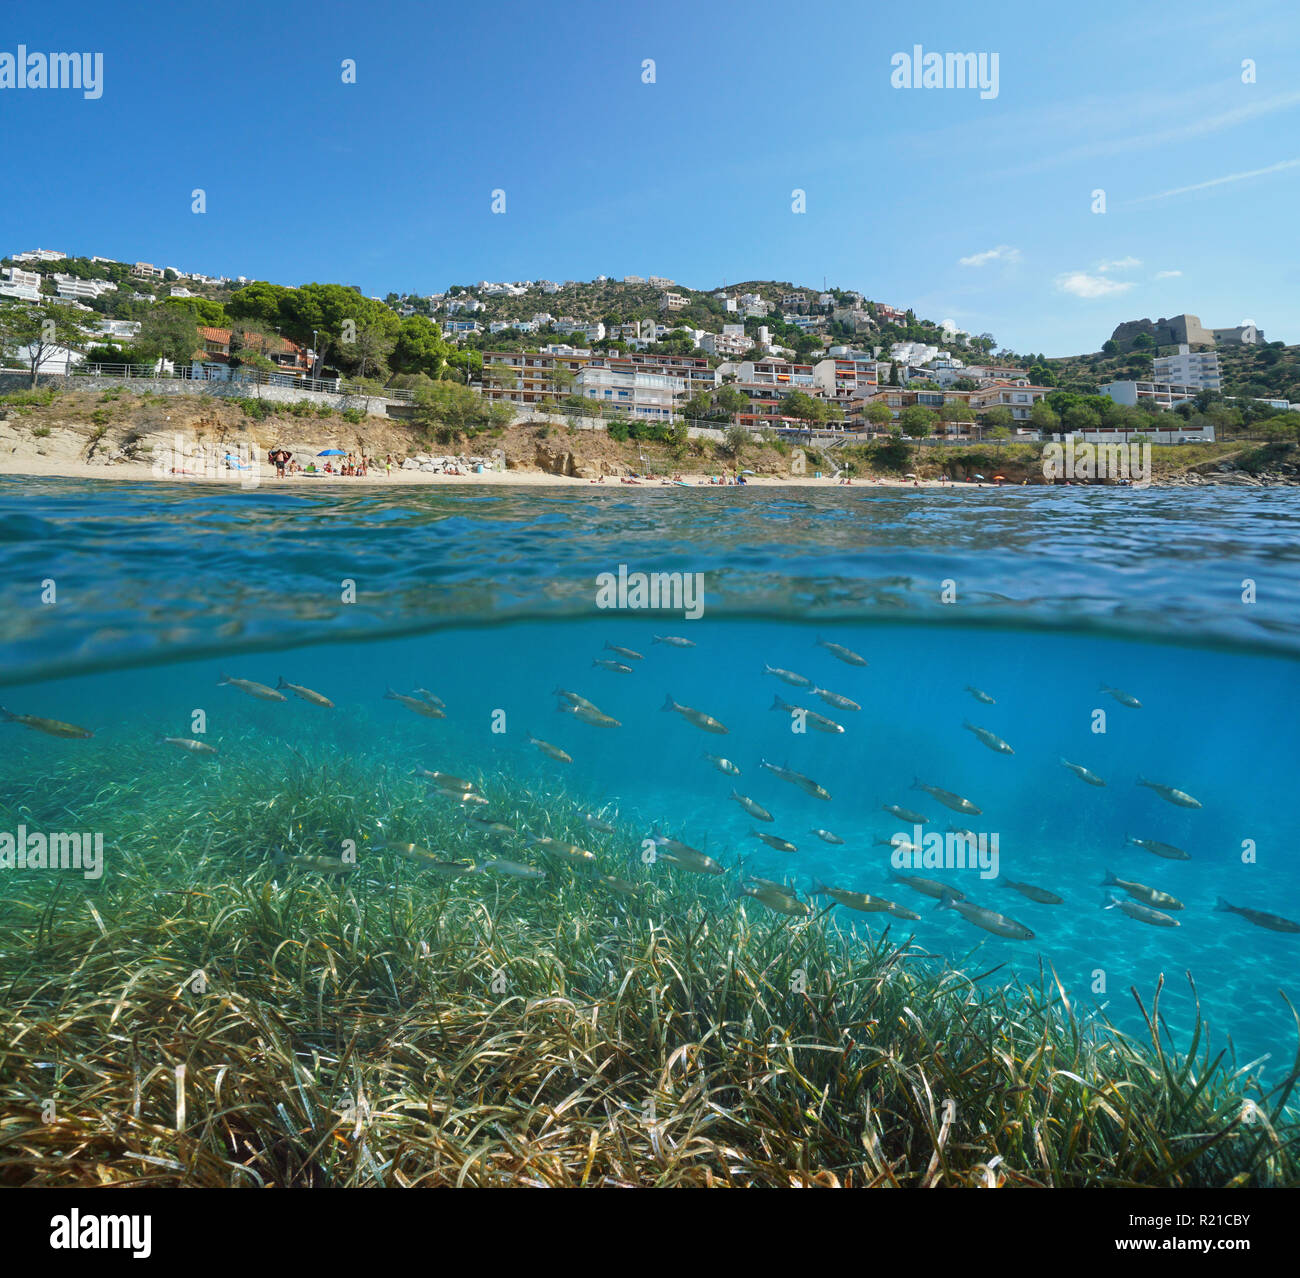 Strand mit Gebäuden in Rosen Stadt und eine Schule der Meeräsche Fisch mit Seegras Unterwasser, geteilte Ansicht, Spanien, Costa Brava, Mittelmeer Stockfoto